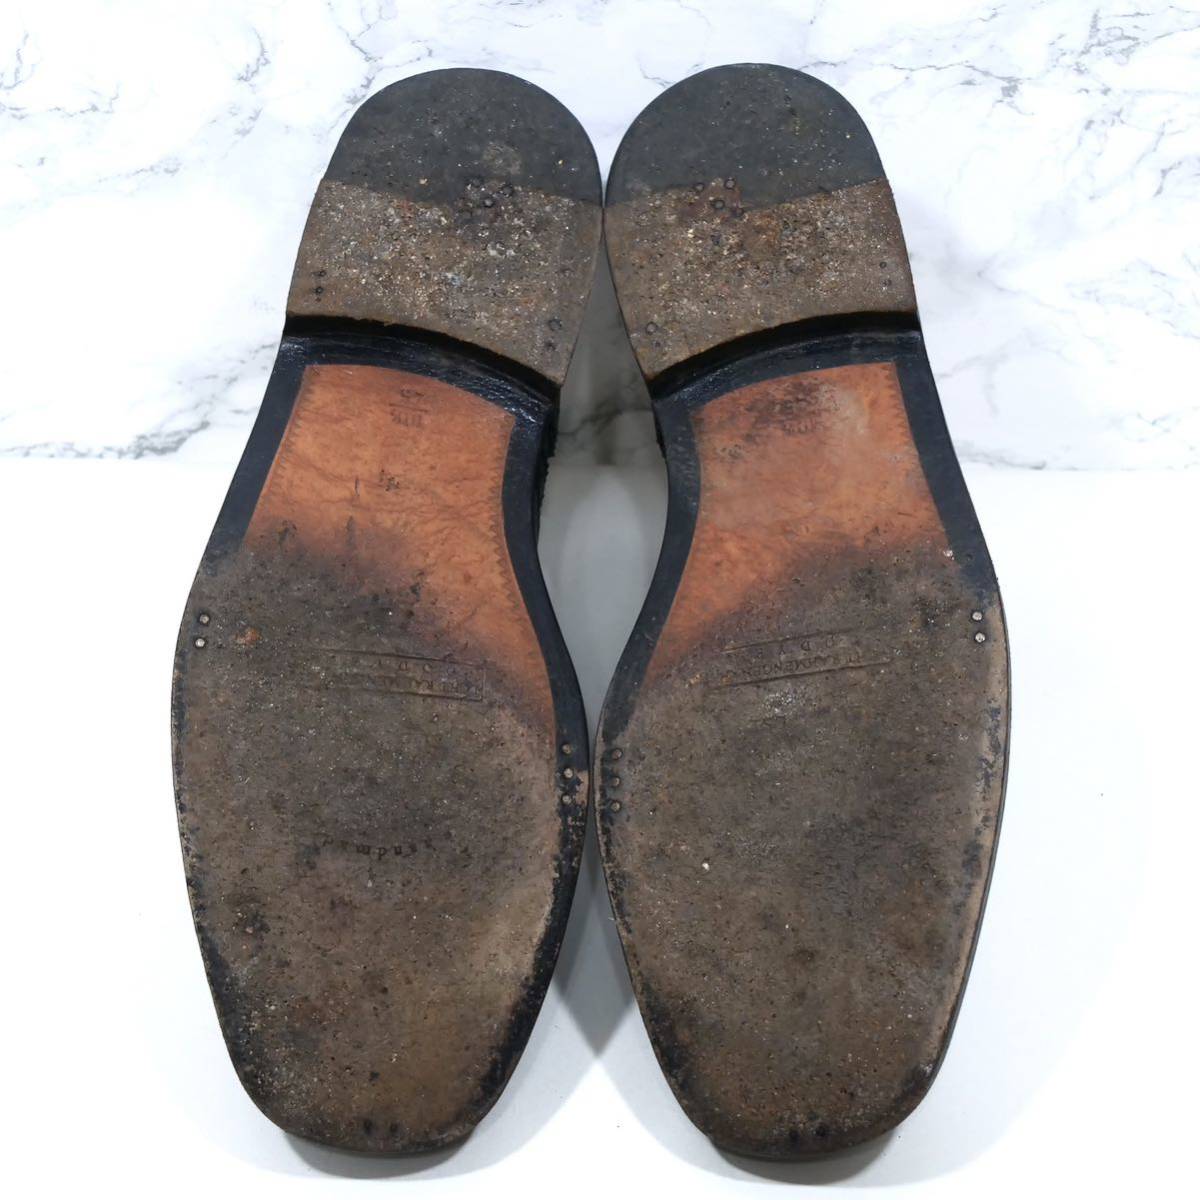 最高峰◎【Laszlo BUDAPEST】ラズロブダペスト UK10.5 28.5cm前後 ブラック ビジネスシューズ カジュアル メンズ 革靴_画像6